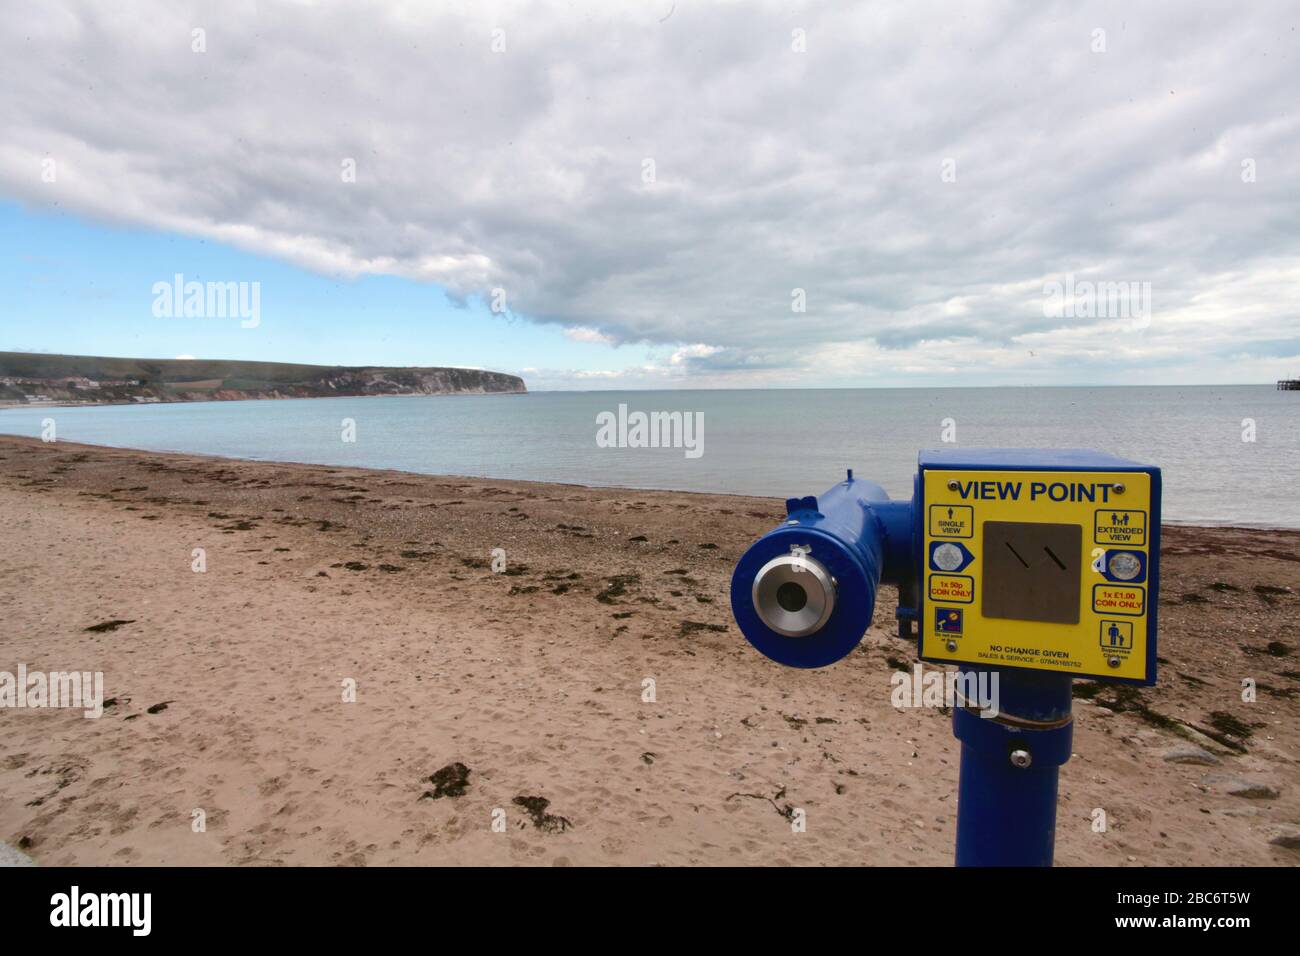 Covid 19 - Vider la plage principale pendant le lock-down à Swanage Dorset UK, avril 2020 Banque D'Images